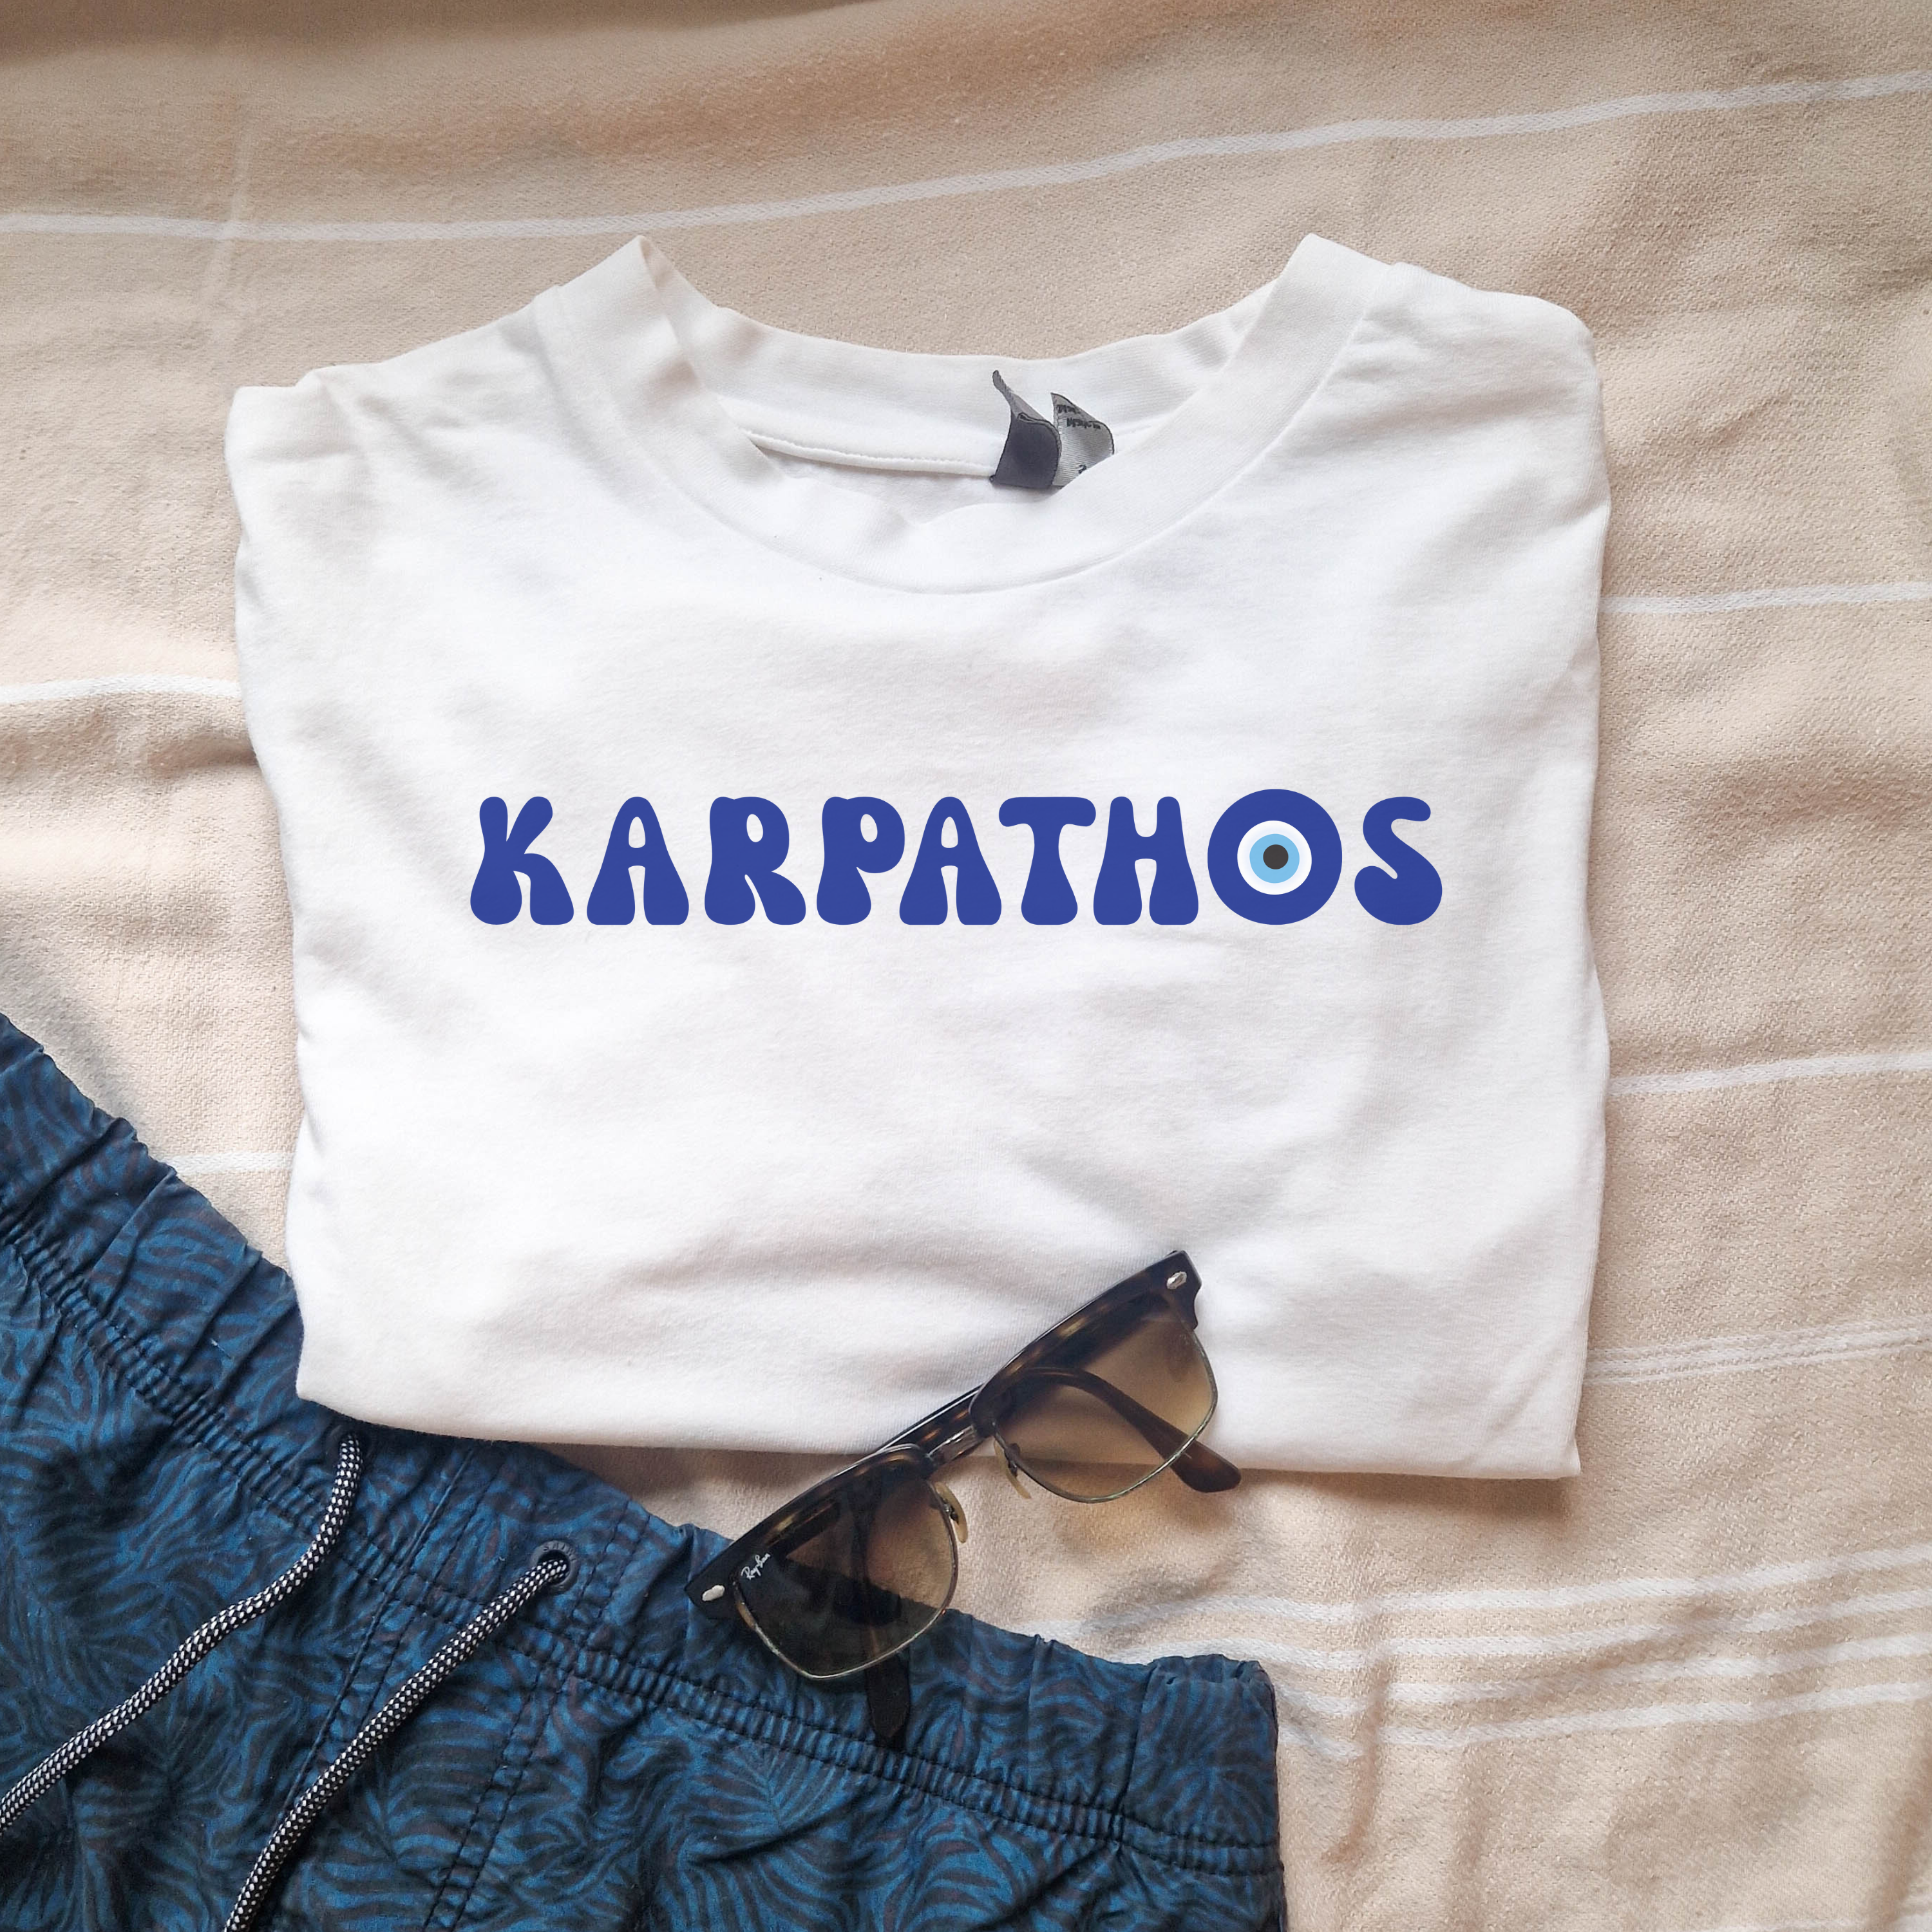 Karpathos T-shirt